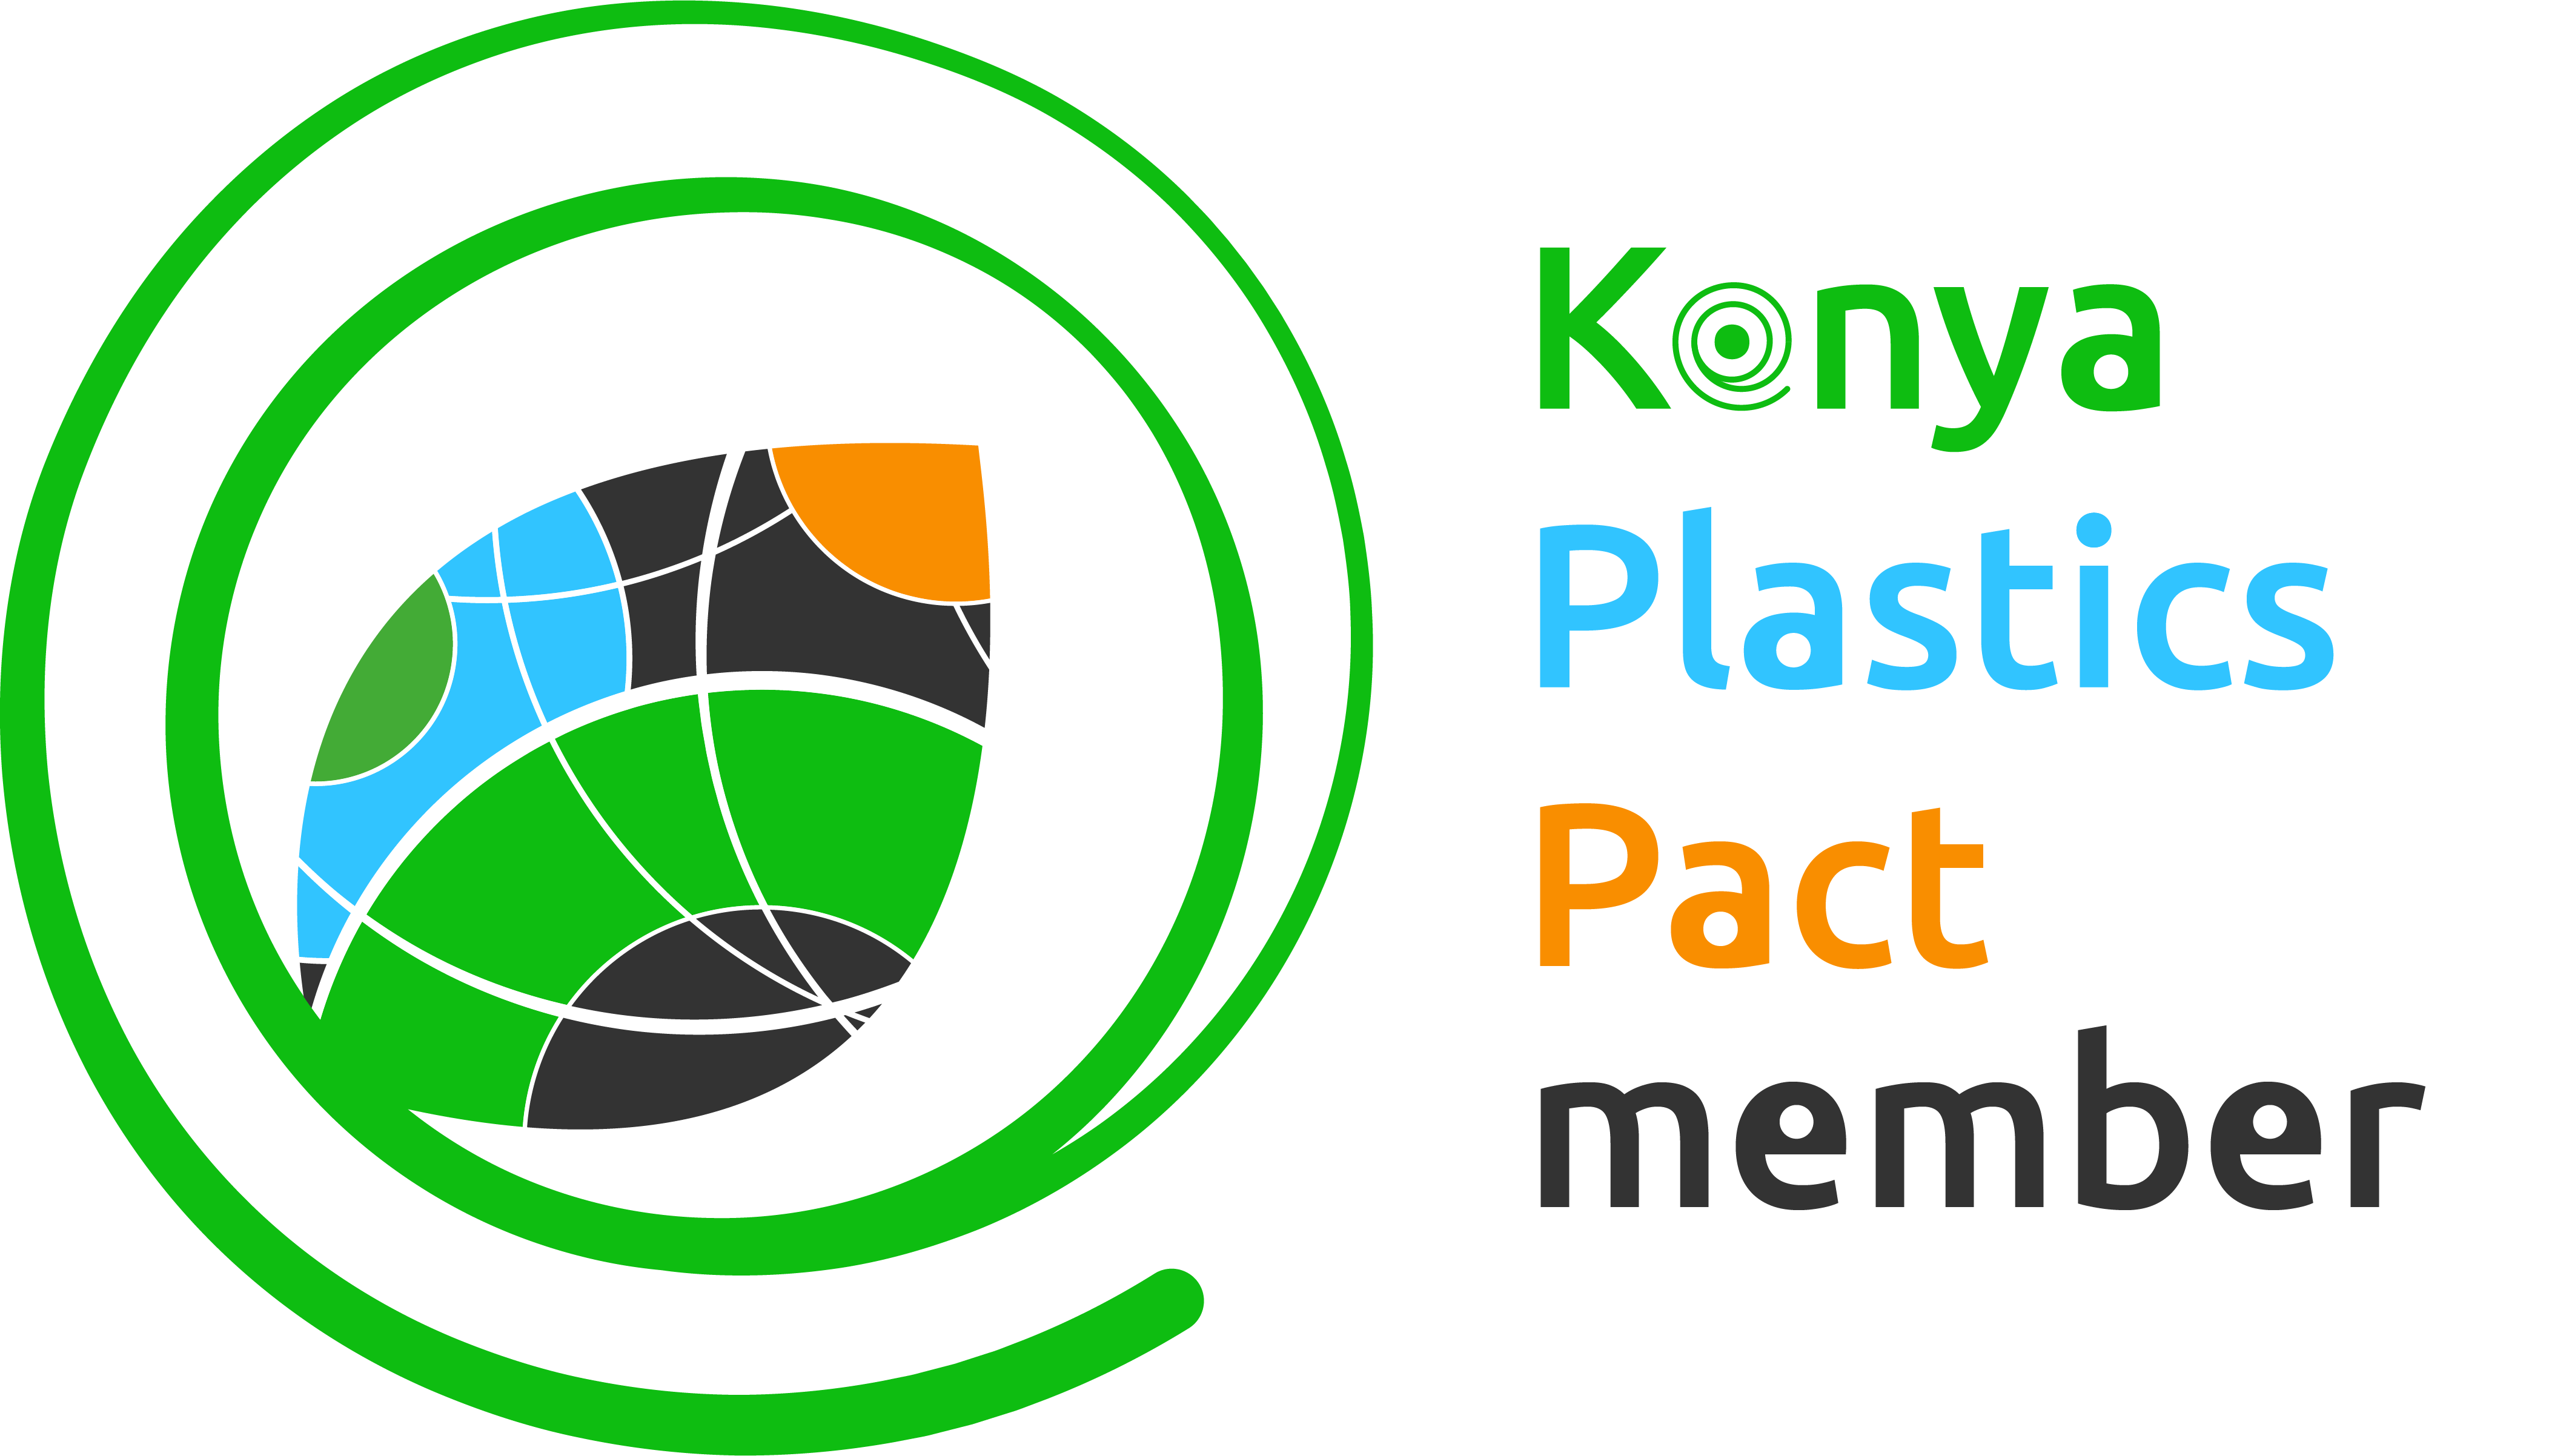 Kenya Plastics Act Logo